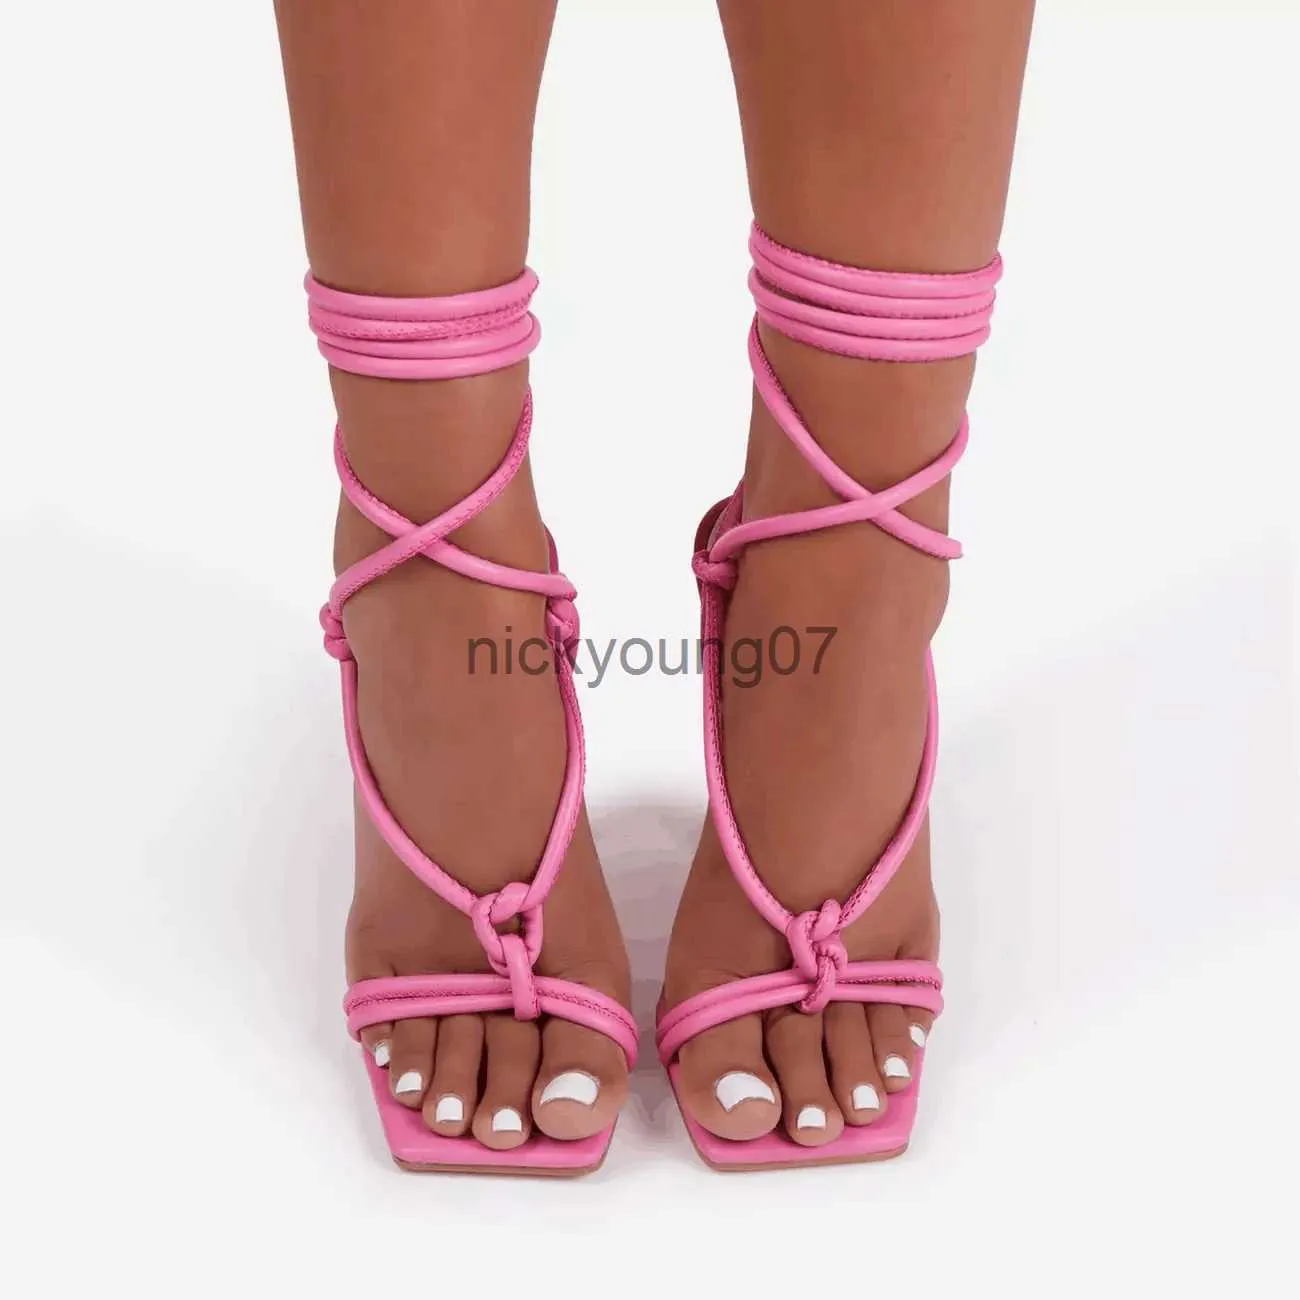 Sandales Nouvelles femmes chaussures à talons hauts sandales rose Stiletto fête bouche de poisson sangle croisée pendentif en métal passerelle chaussures pour femmes 35-43J240122